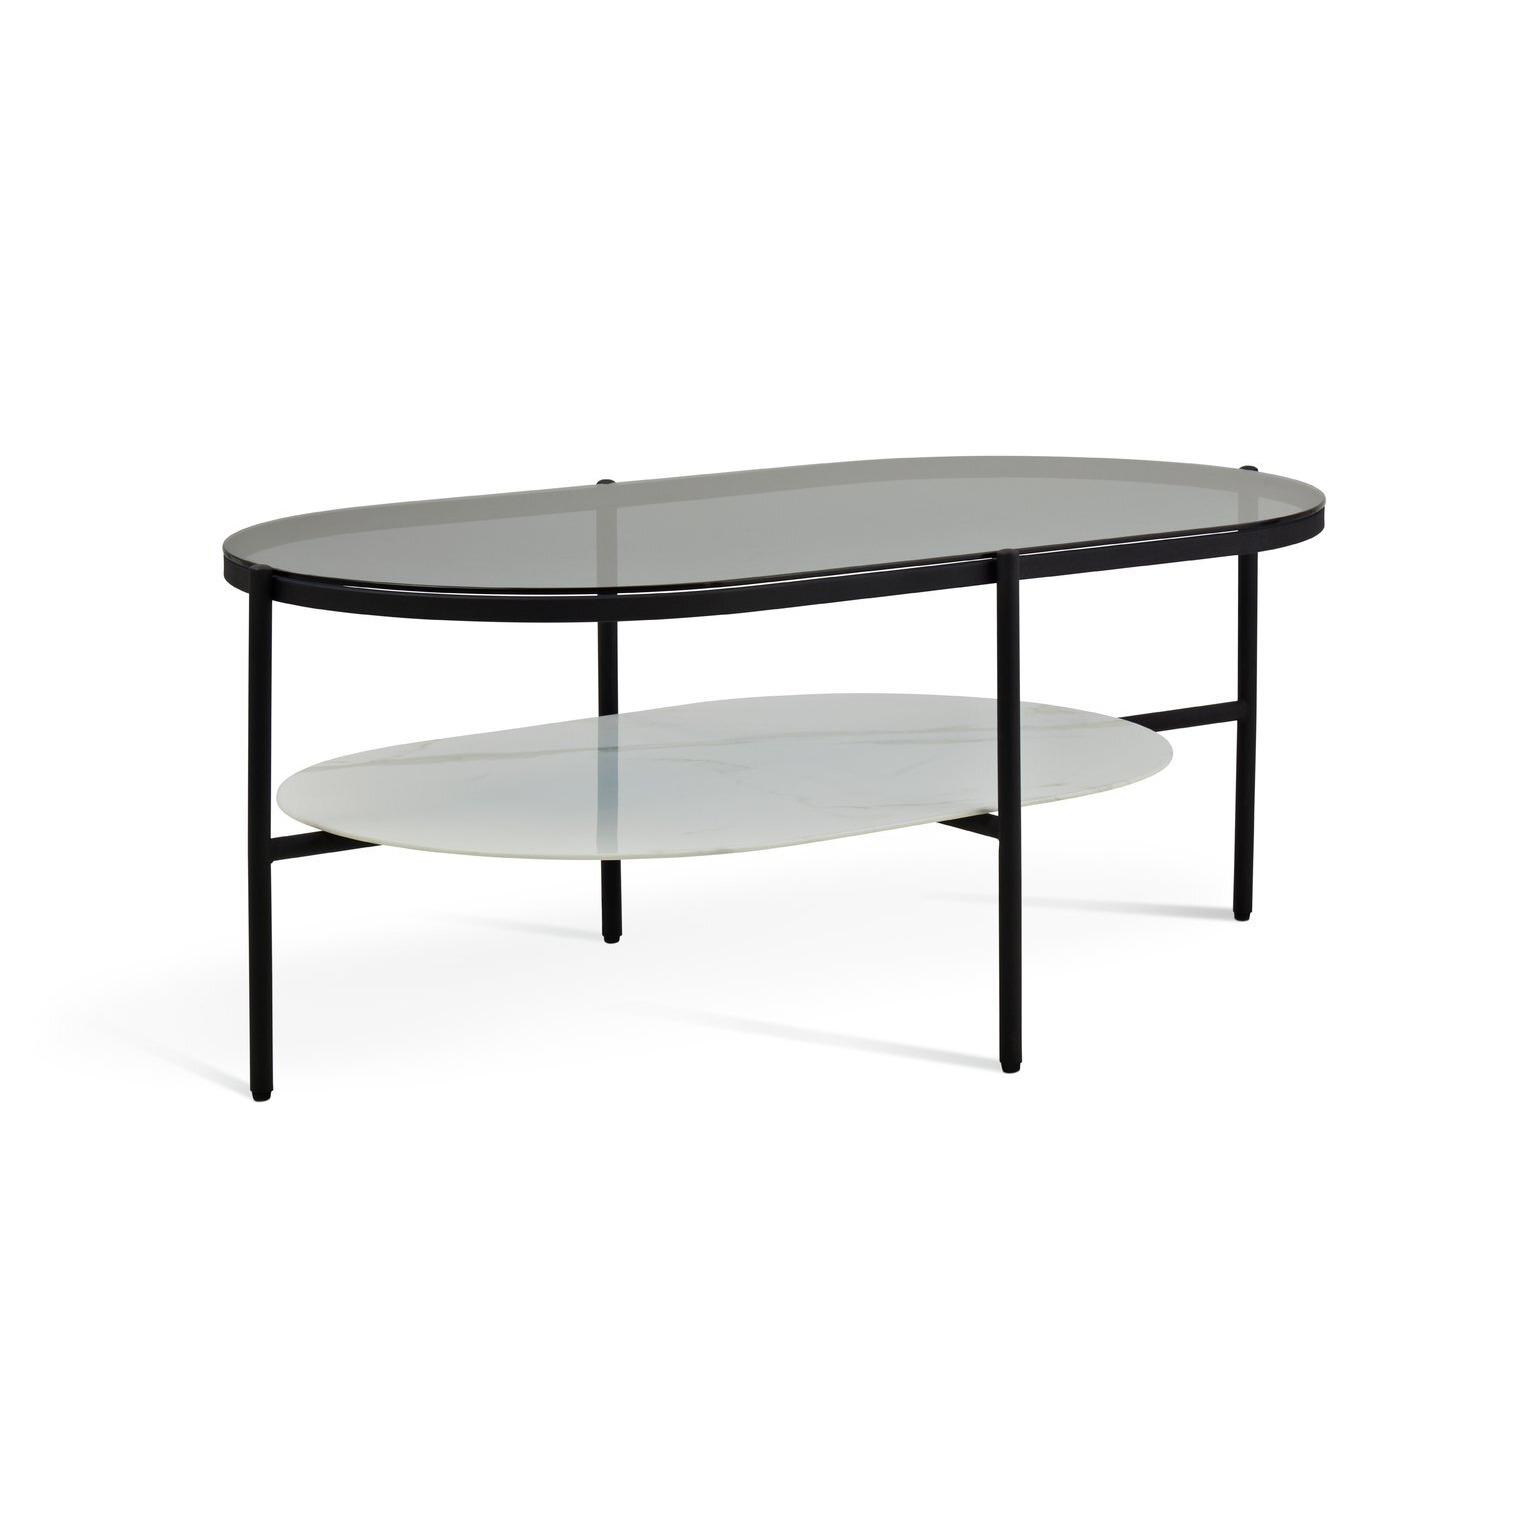 Habitat Mist Coffee Table - Black & White - image 1